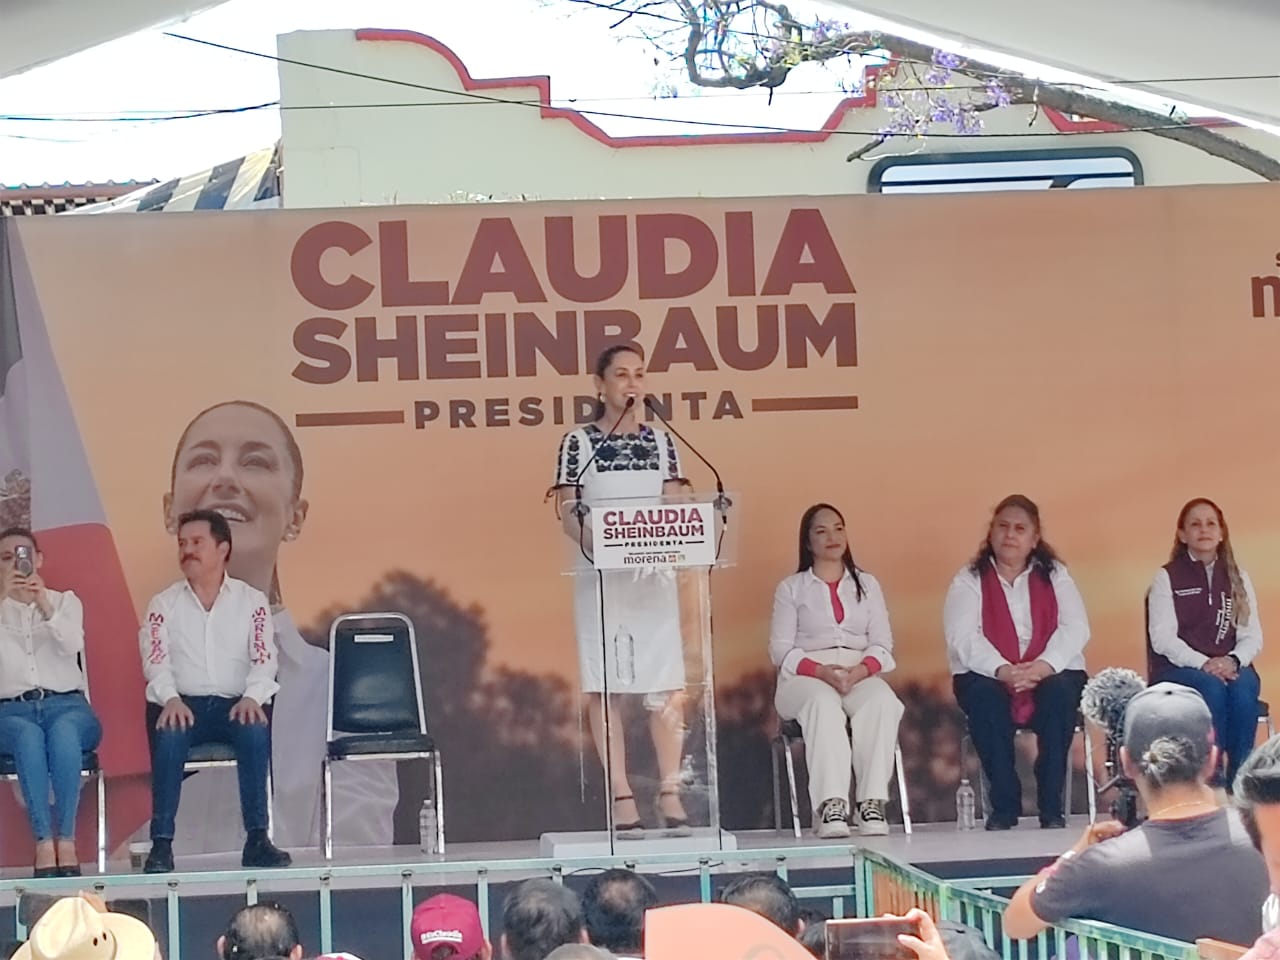 Claudia Sheinbaum Destaca Avances en su Campaña Presidencial por 10 Estados del País